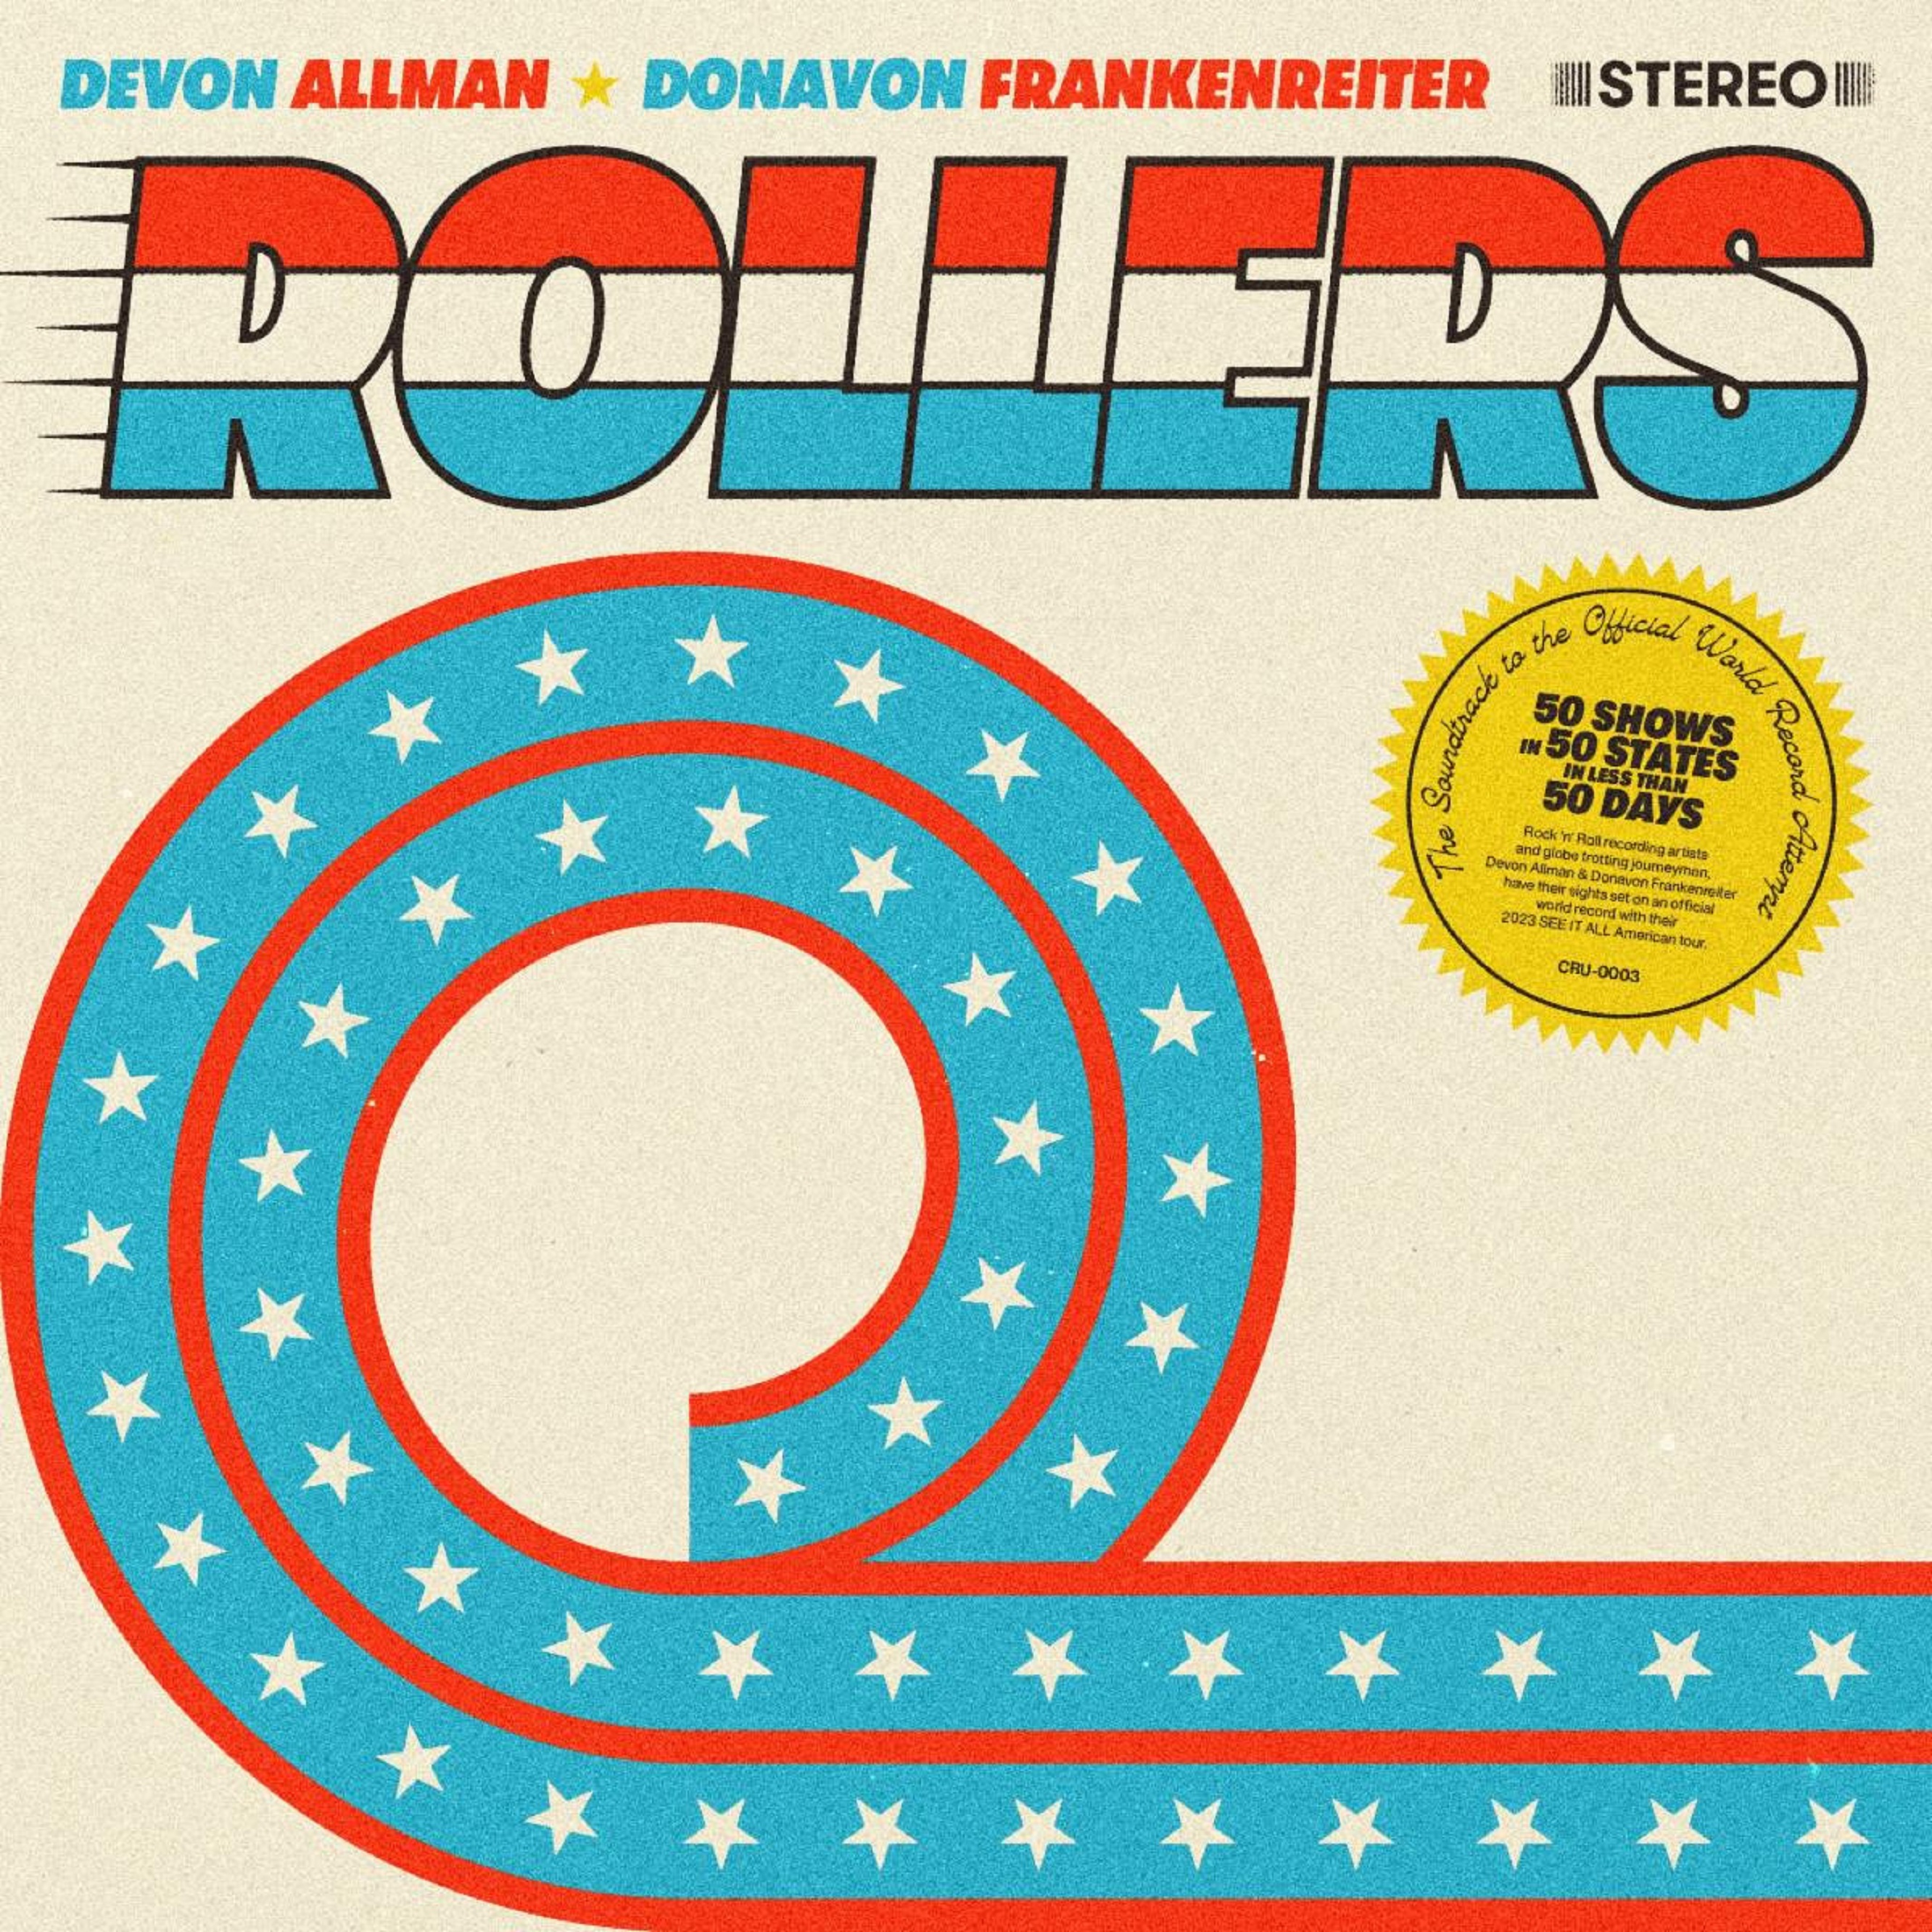 Devon Allman & Donavon Frankenreiter - New EP 'Rollers' Out Now!